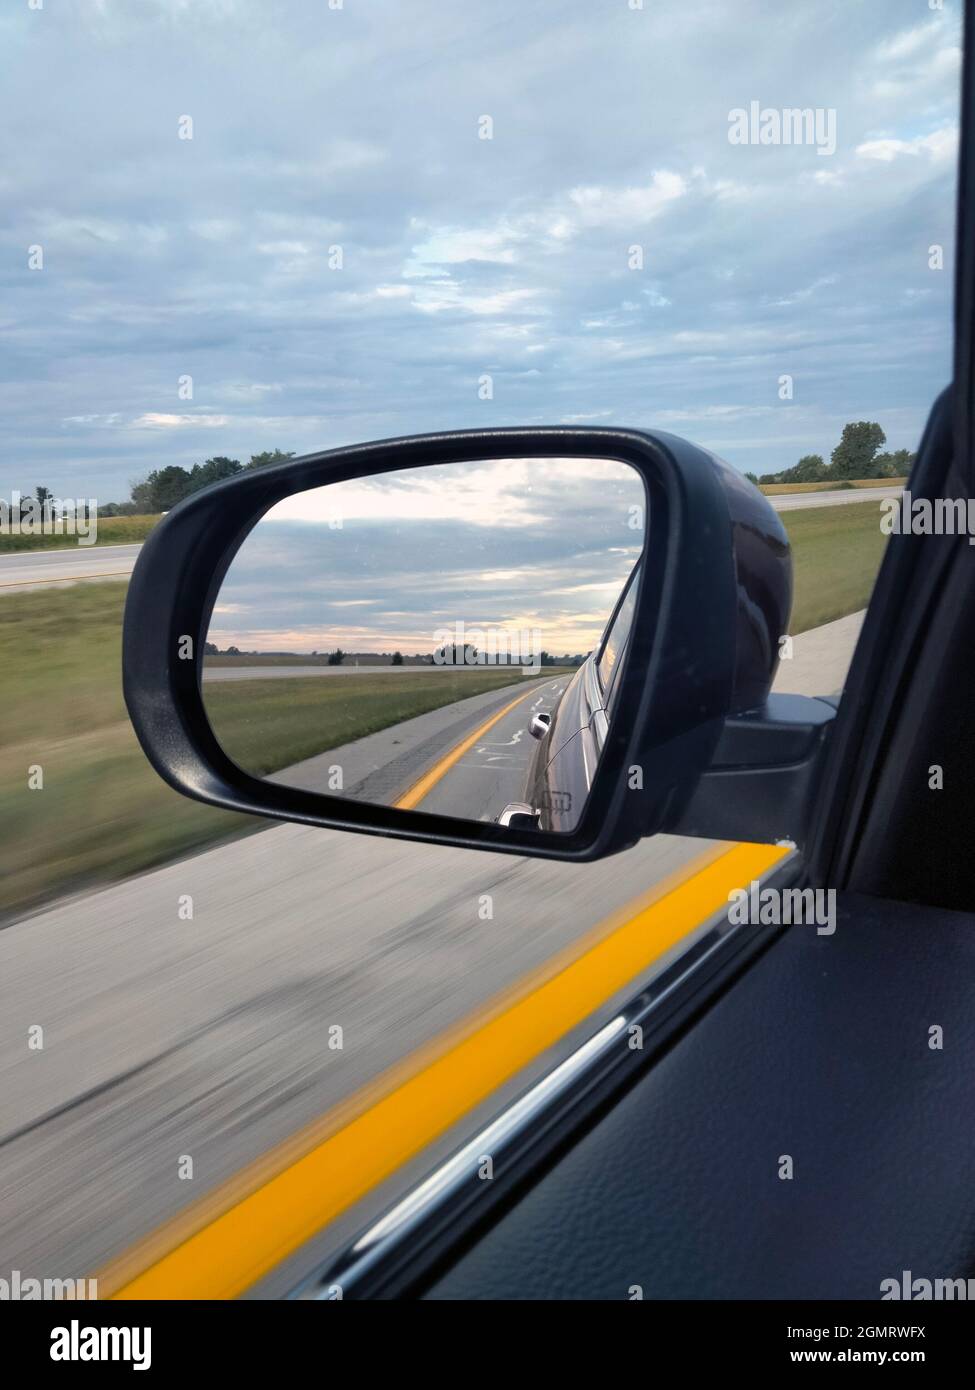 Un lever de soleil nuageux depuis le rétroviseur latéral en conduisant vers l'ouest sur une autoroute rurale dans la partie Midwestern des États-Unis Banque D'Images